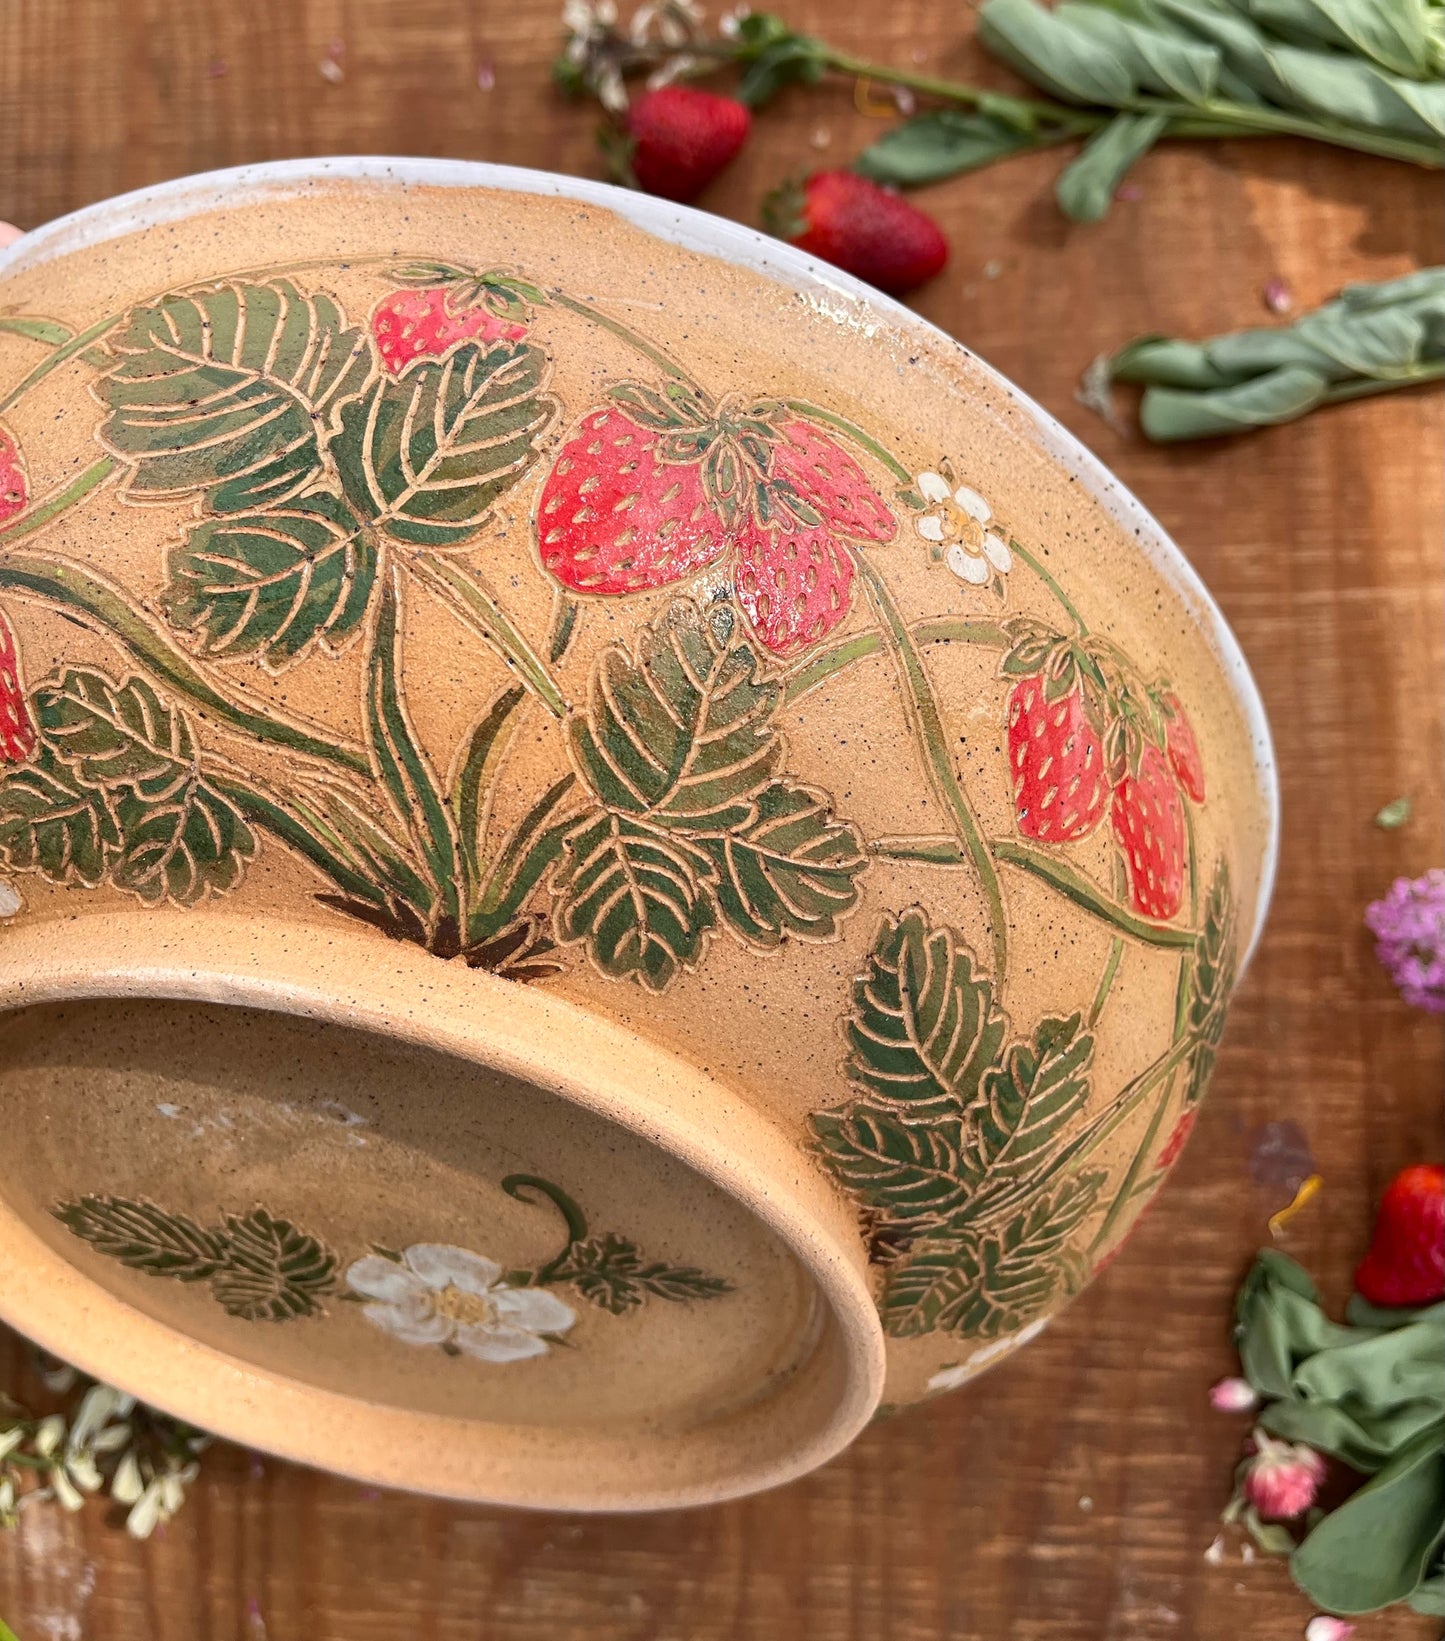 Strawberry Serving Bowl - Handmade Ceramic Bowl 11"